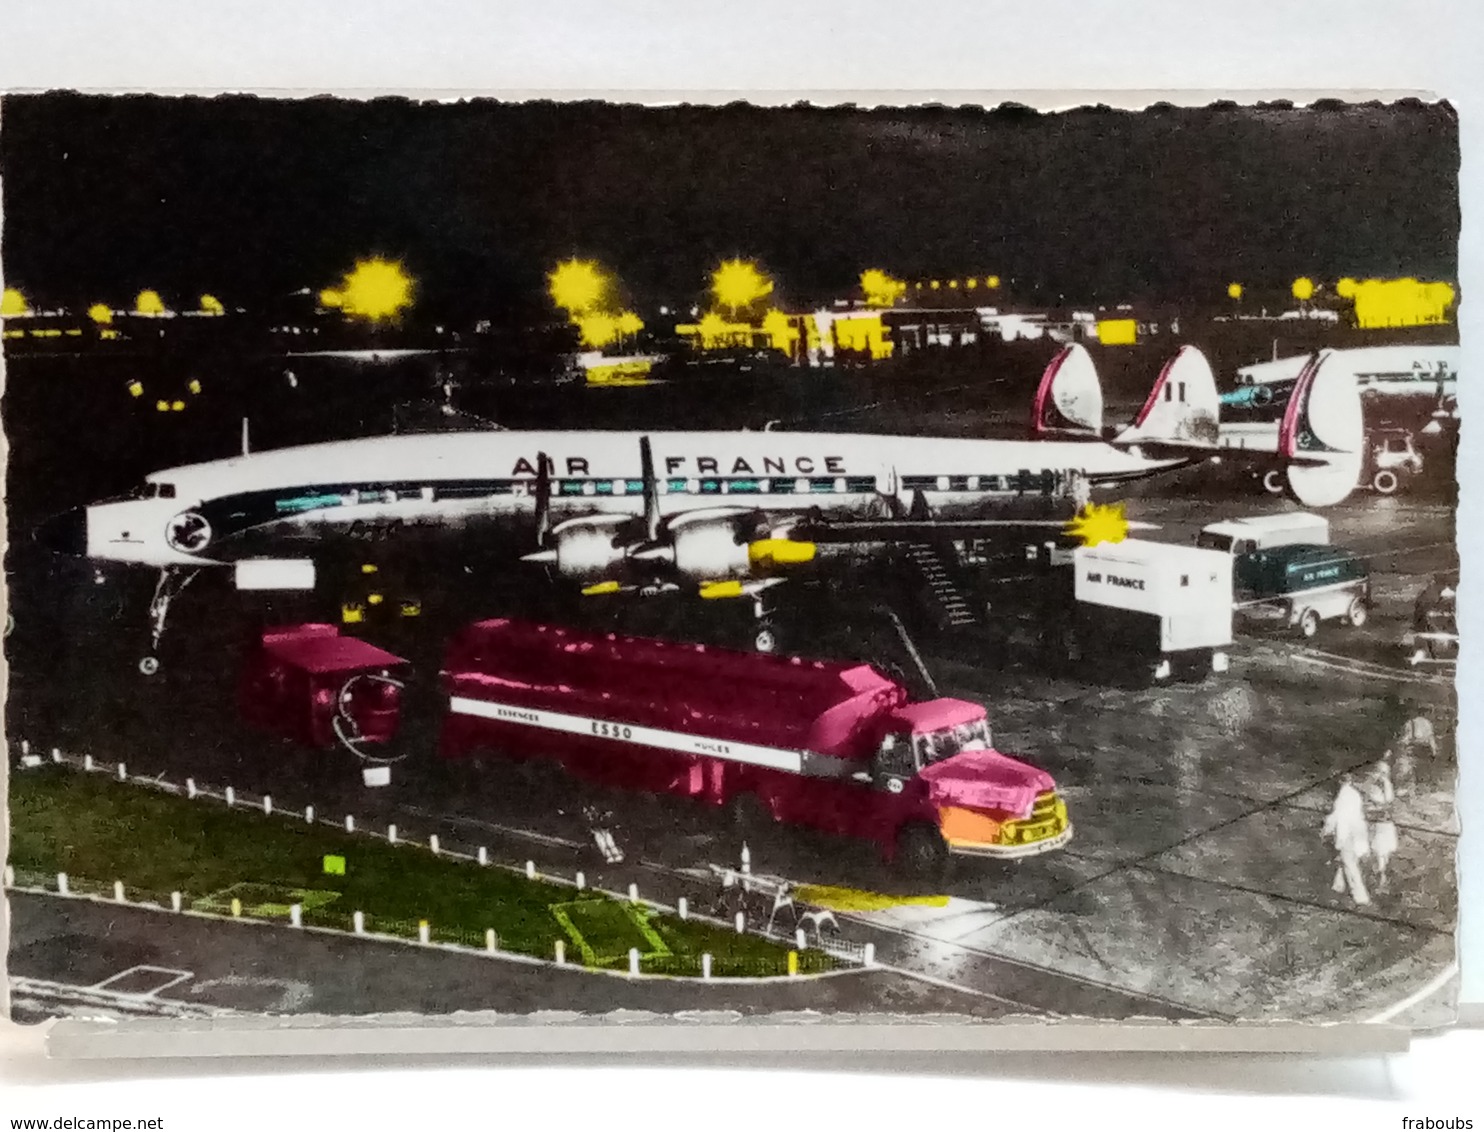 IMAGES DE FRANCE - AEROPORT DE PARIS - AVION AIR FRANCE A IDENTIFIER + CAMION CITERNE ESSO + DIVERS VEHICULES - 1946-....: Ere Moderne